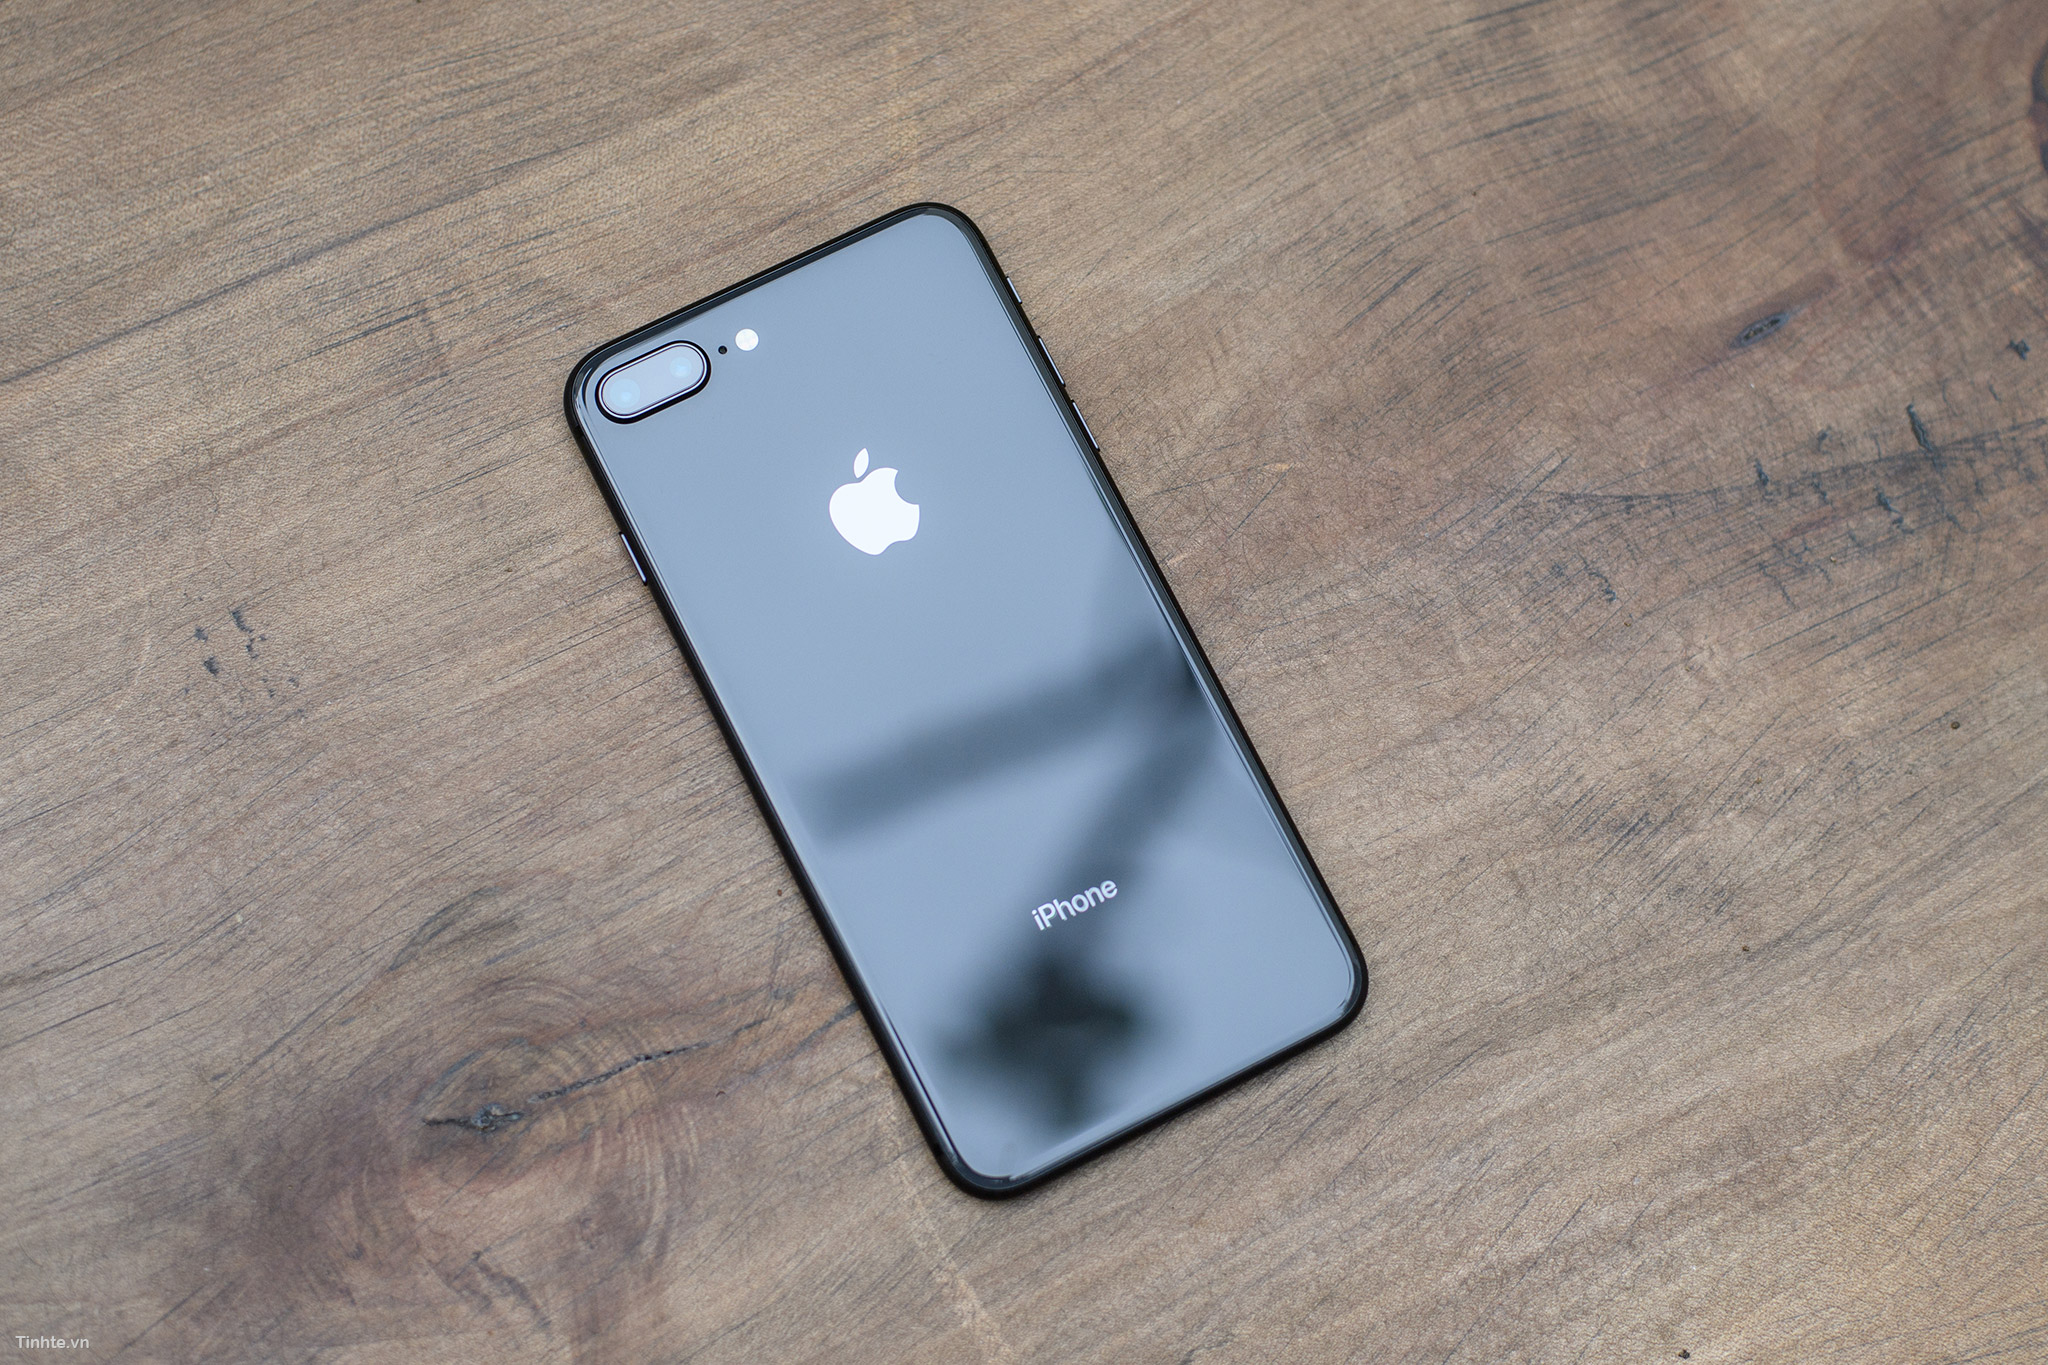 iPhone 8 Space Gray: Nắm bắt cơ hội sở hữu chiếc iPhone 8 với phiên bản màu Space Gray đầy mê hoặc. Với sự kết hợp hoàn hảo giữa thiết kế tinh tế, màn hình lớn và khả năng xử lý nhanh chóng, iPhone 8 Space Gray sẽ là lựa chọn tuyệt vời cho những người yêu công nghệ.